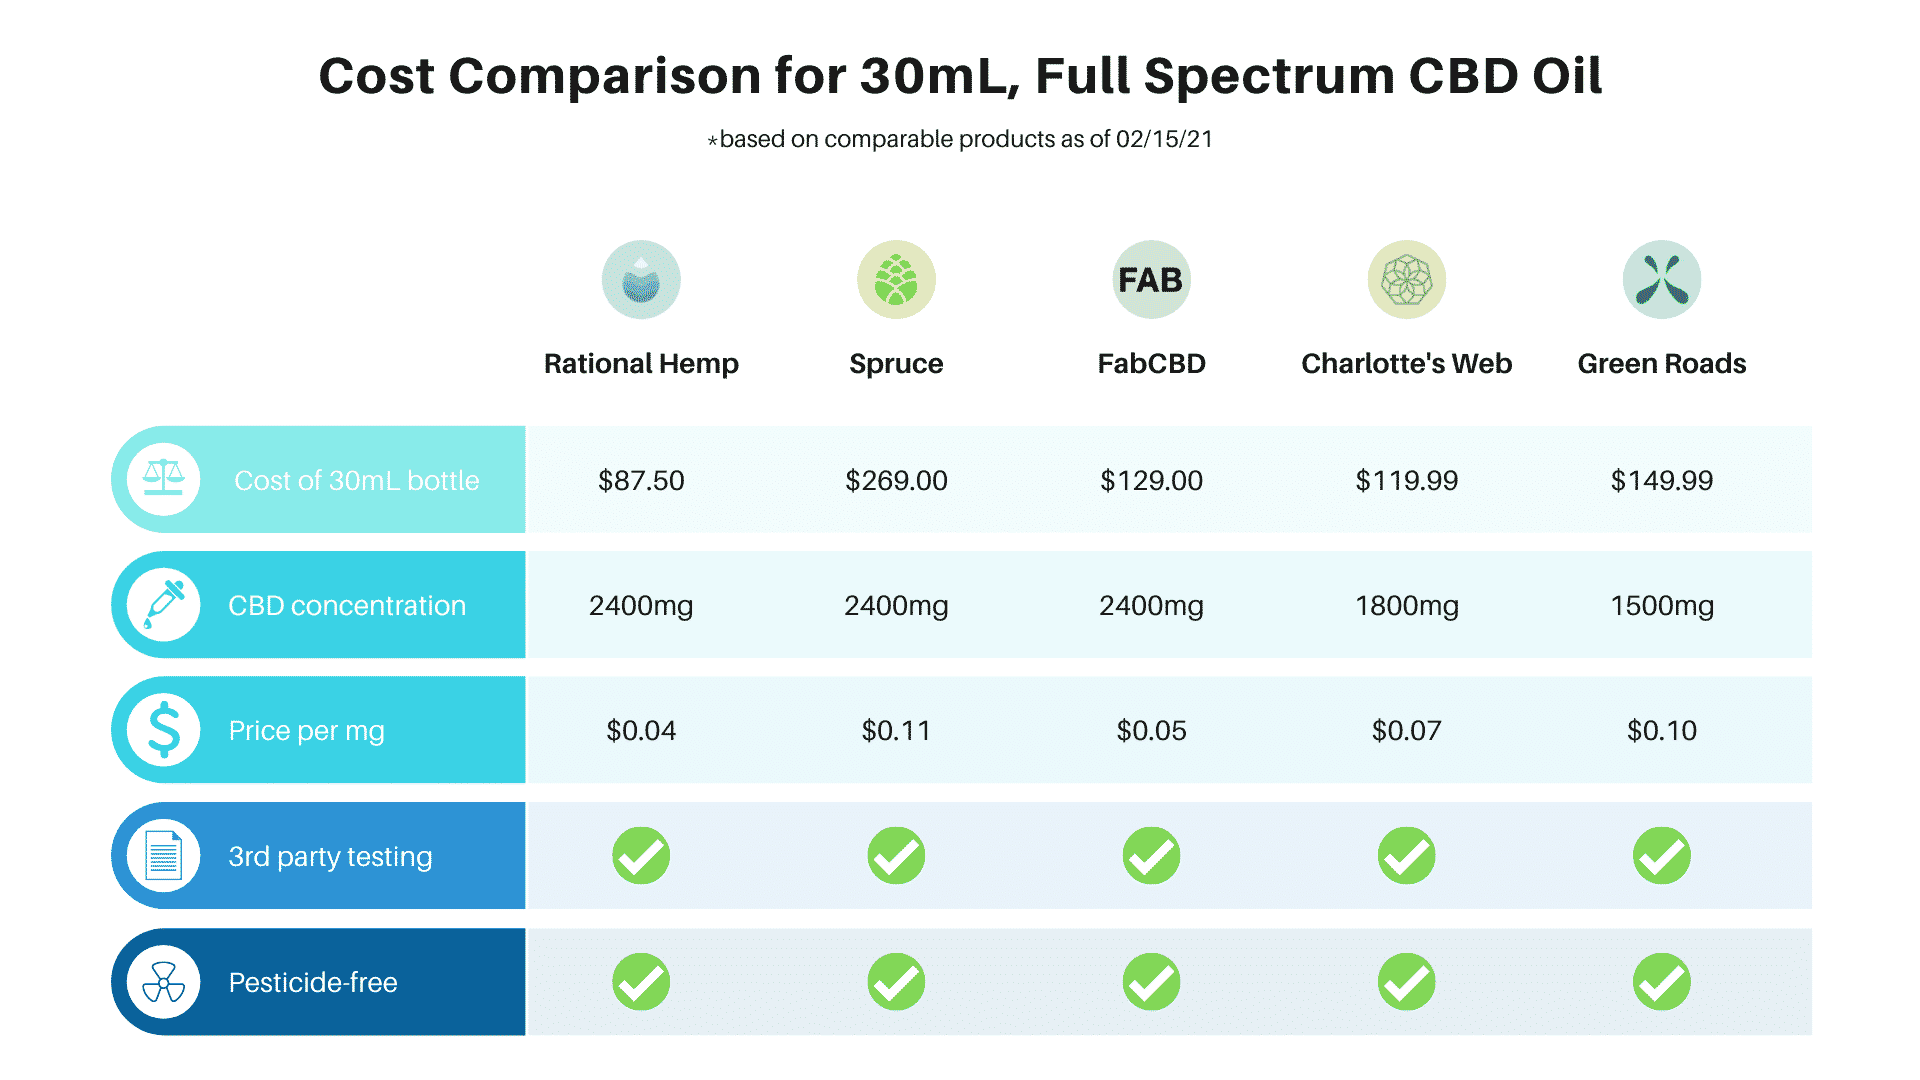 Cost comparison for CBD oil brands